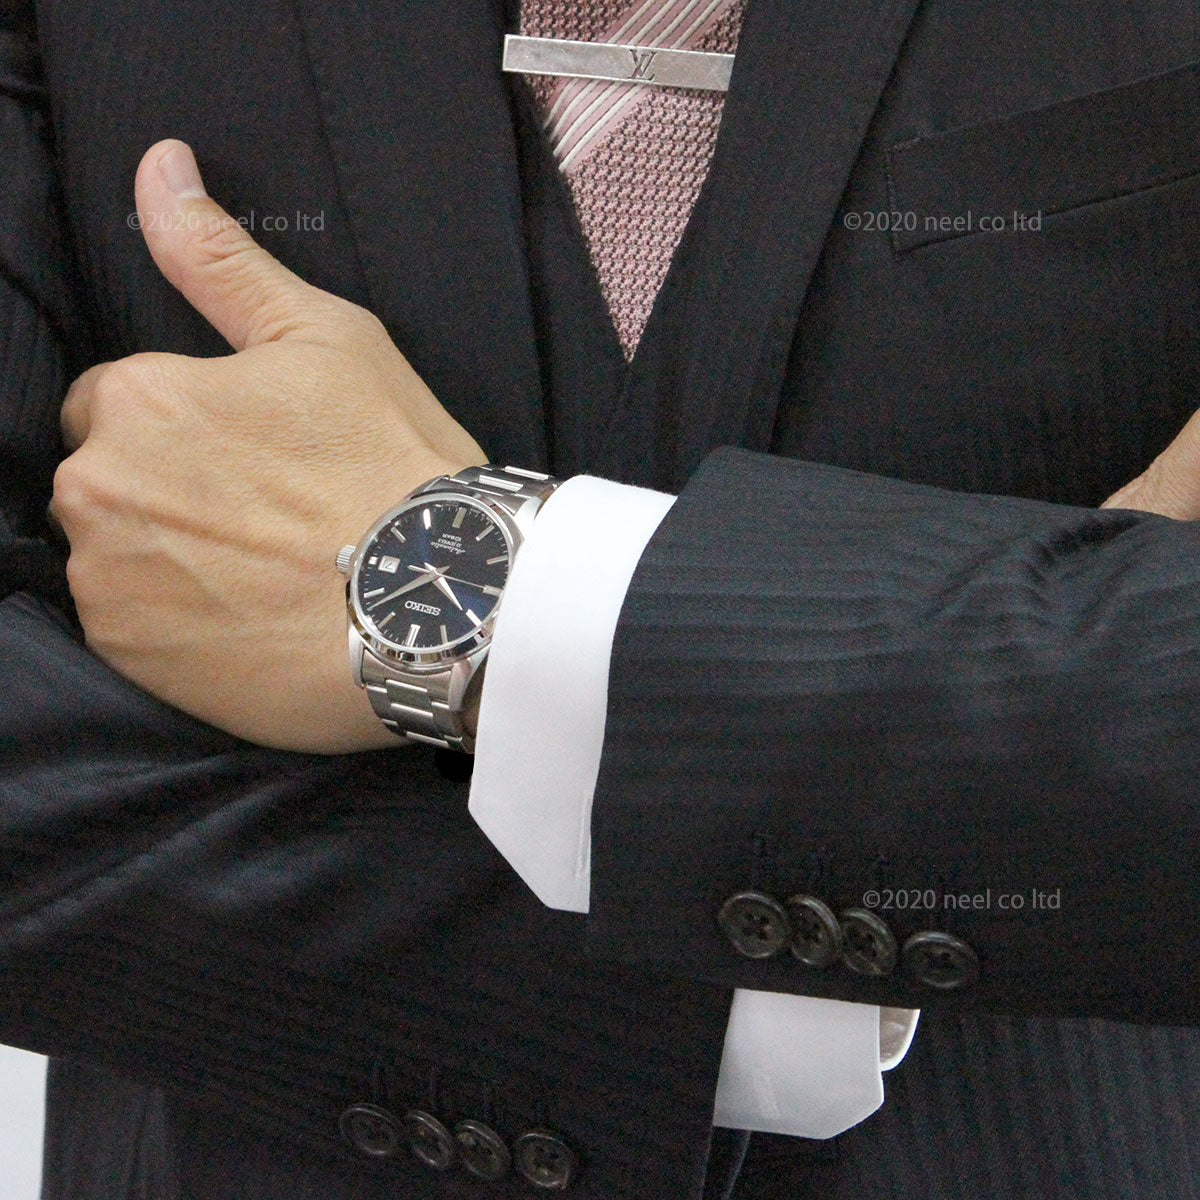 セイコー メカニカル 自動巻き 先行販売 ネット流通限定モデル 腕時計 メンズ ドレスライン SEIKO Mechanical SZSB013